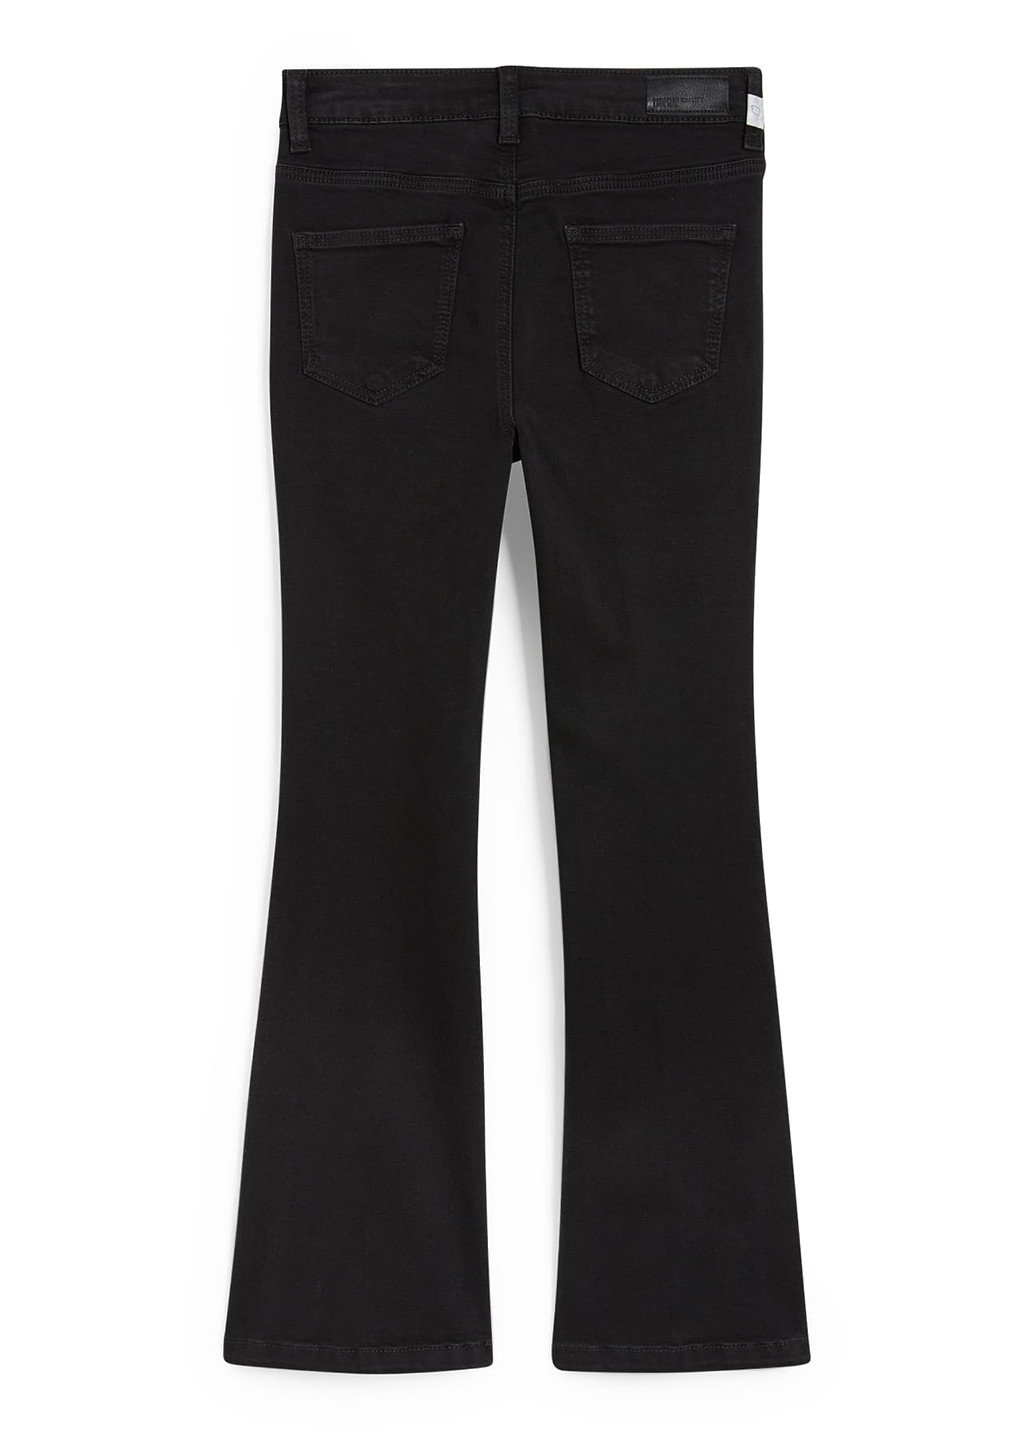 Черные демисезонные буткат фит джинсы C&A